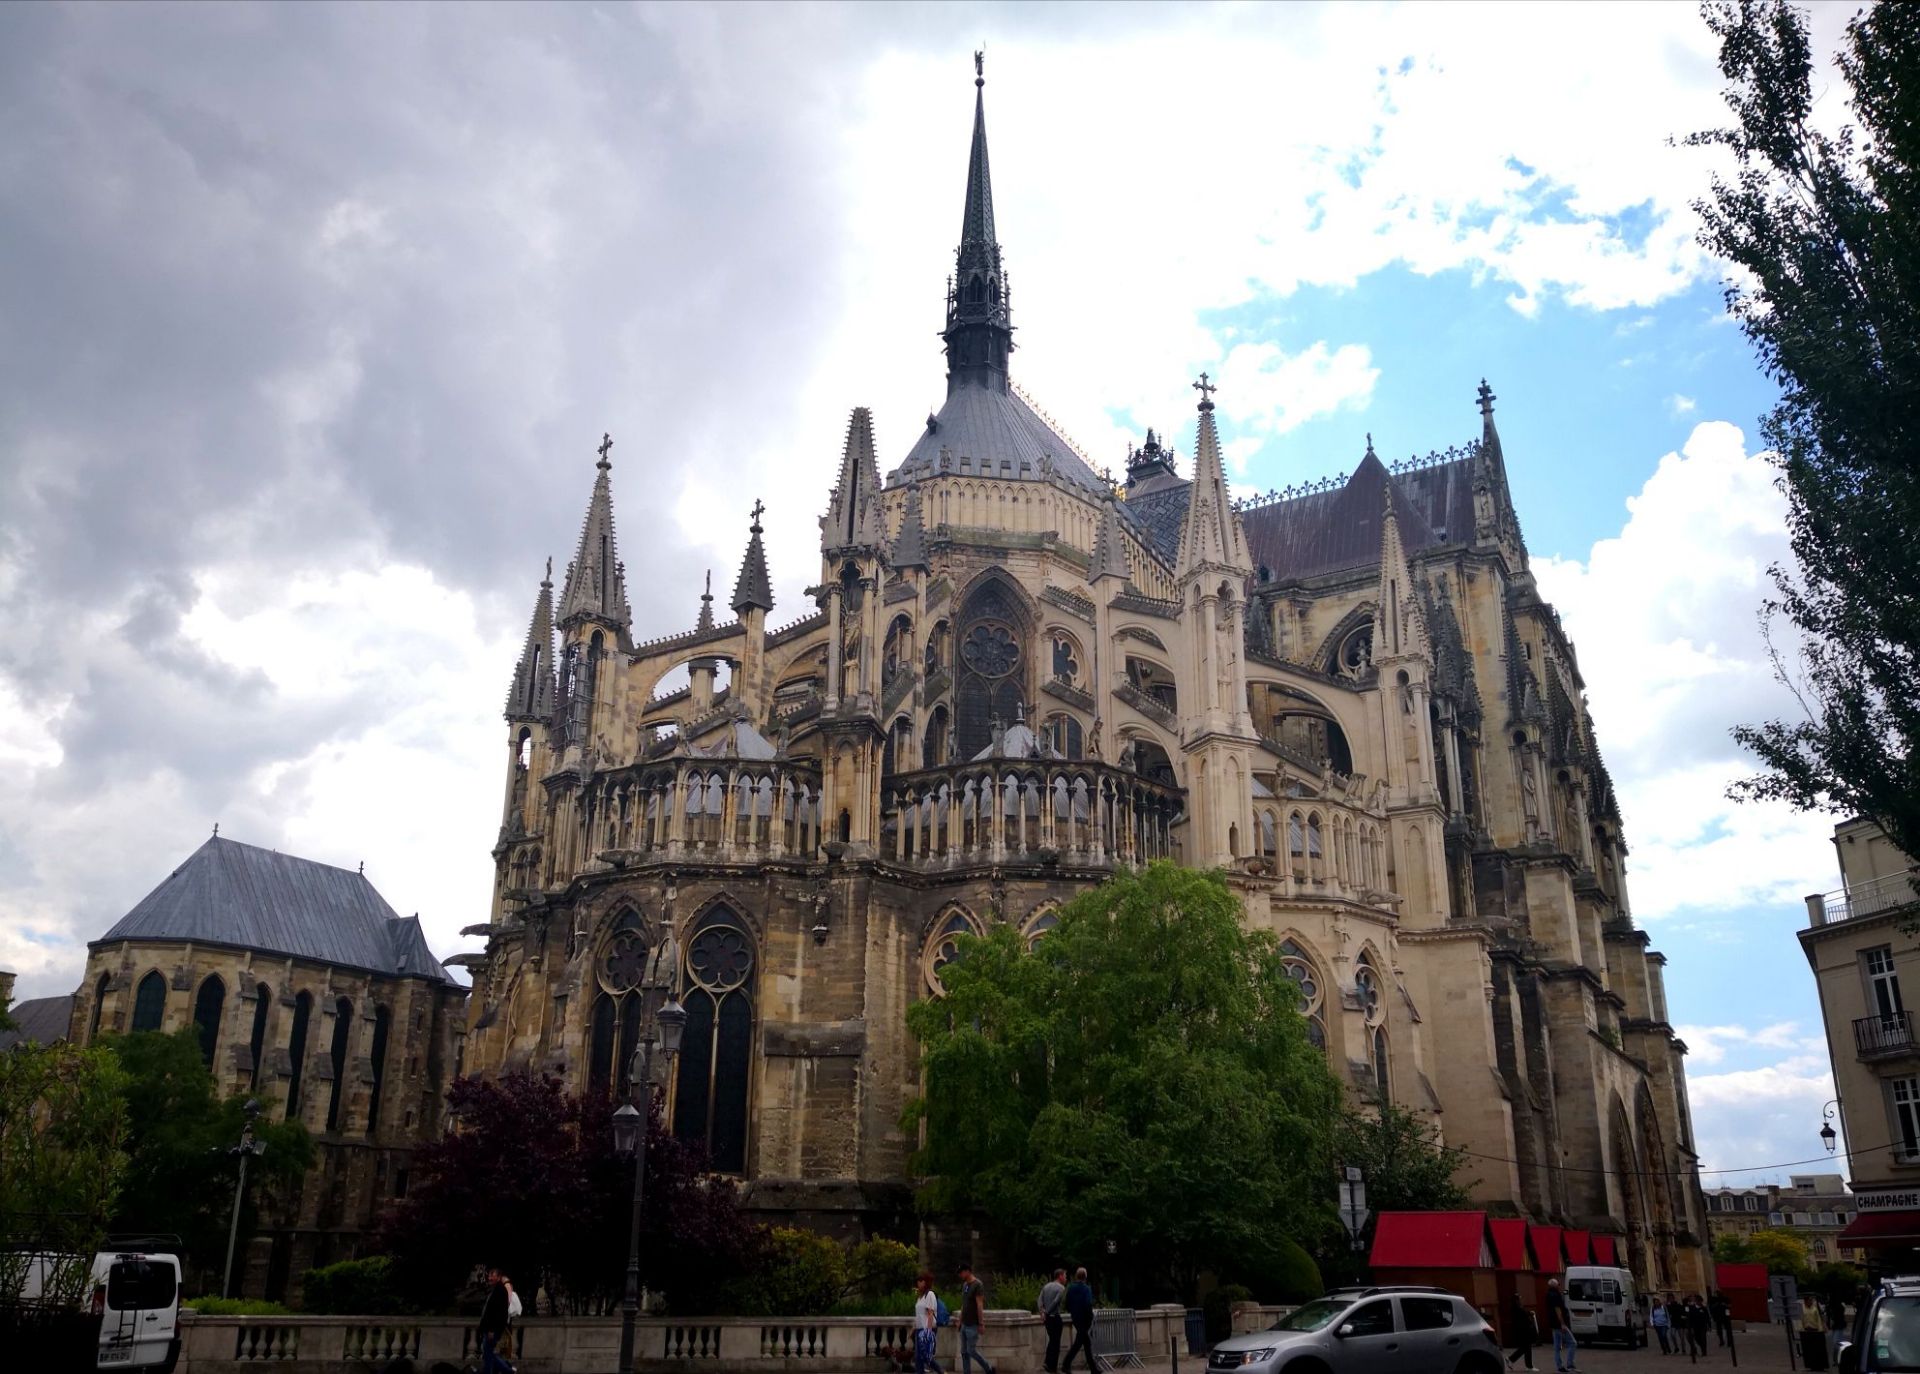 法国的兰斯。著名的兰斯大教堂，在法兰西历史上威望巨大，一千多年前法国第一位国王在此接受洗礼，这里也是